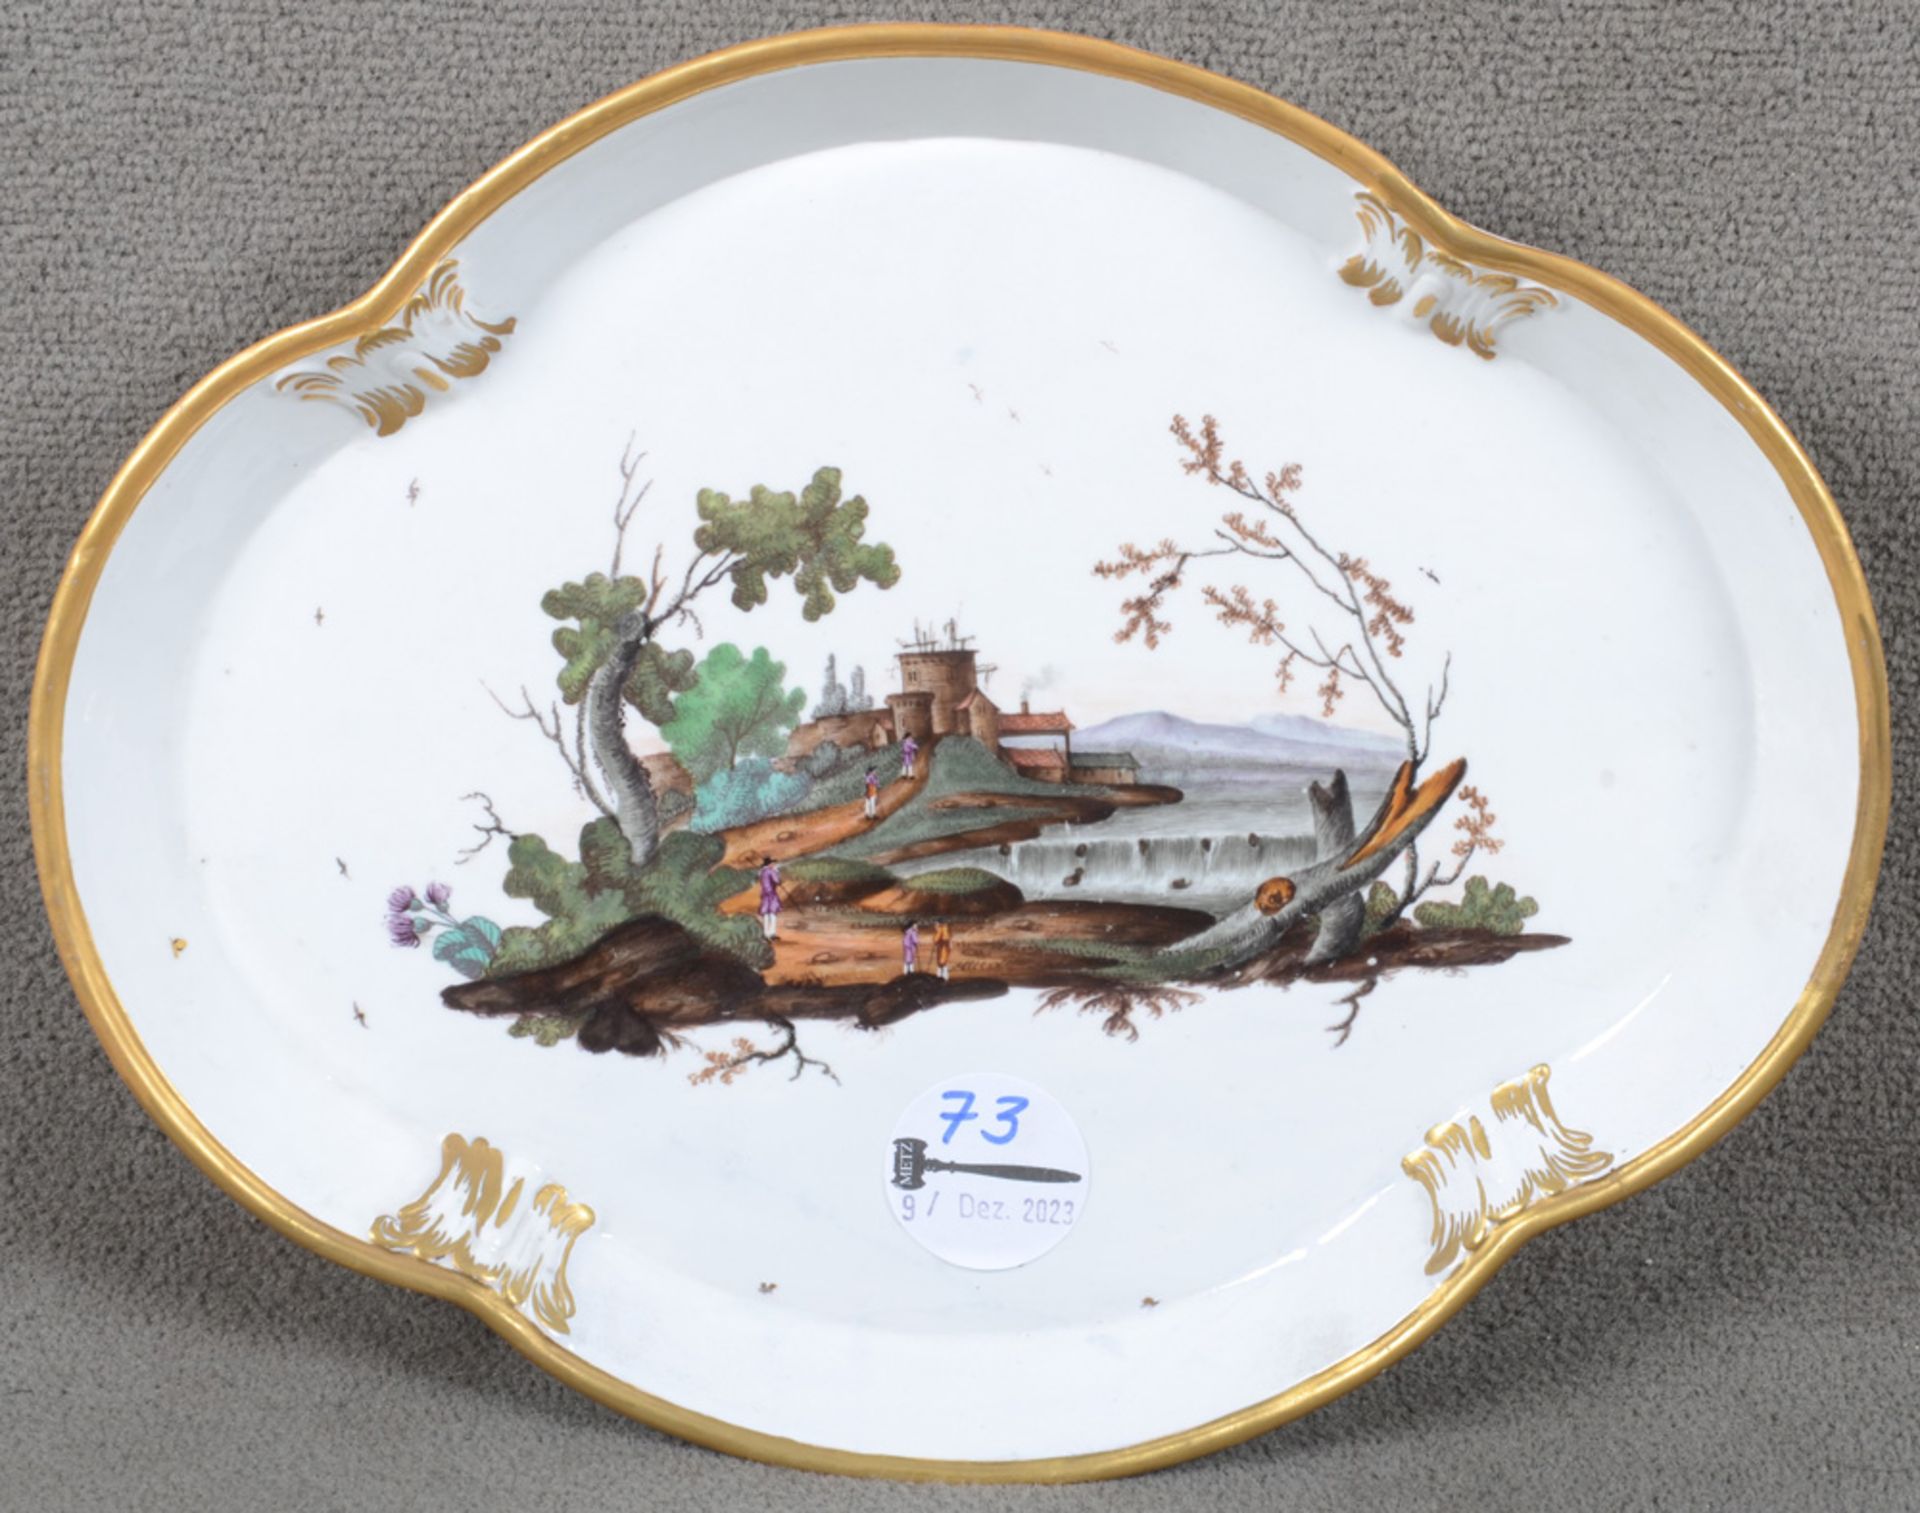 Ovale Platte. Höchst um 1765. Porzellan, bunt bemalt mit Landschaft. Verso unterglasurblaue